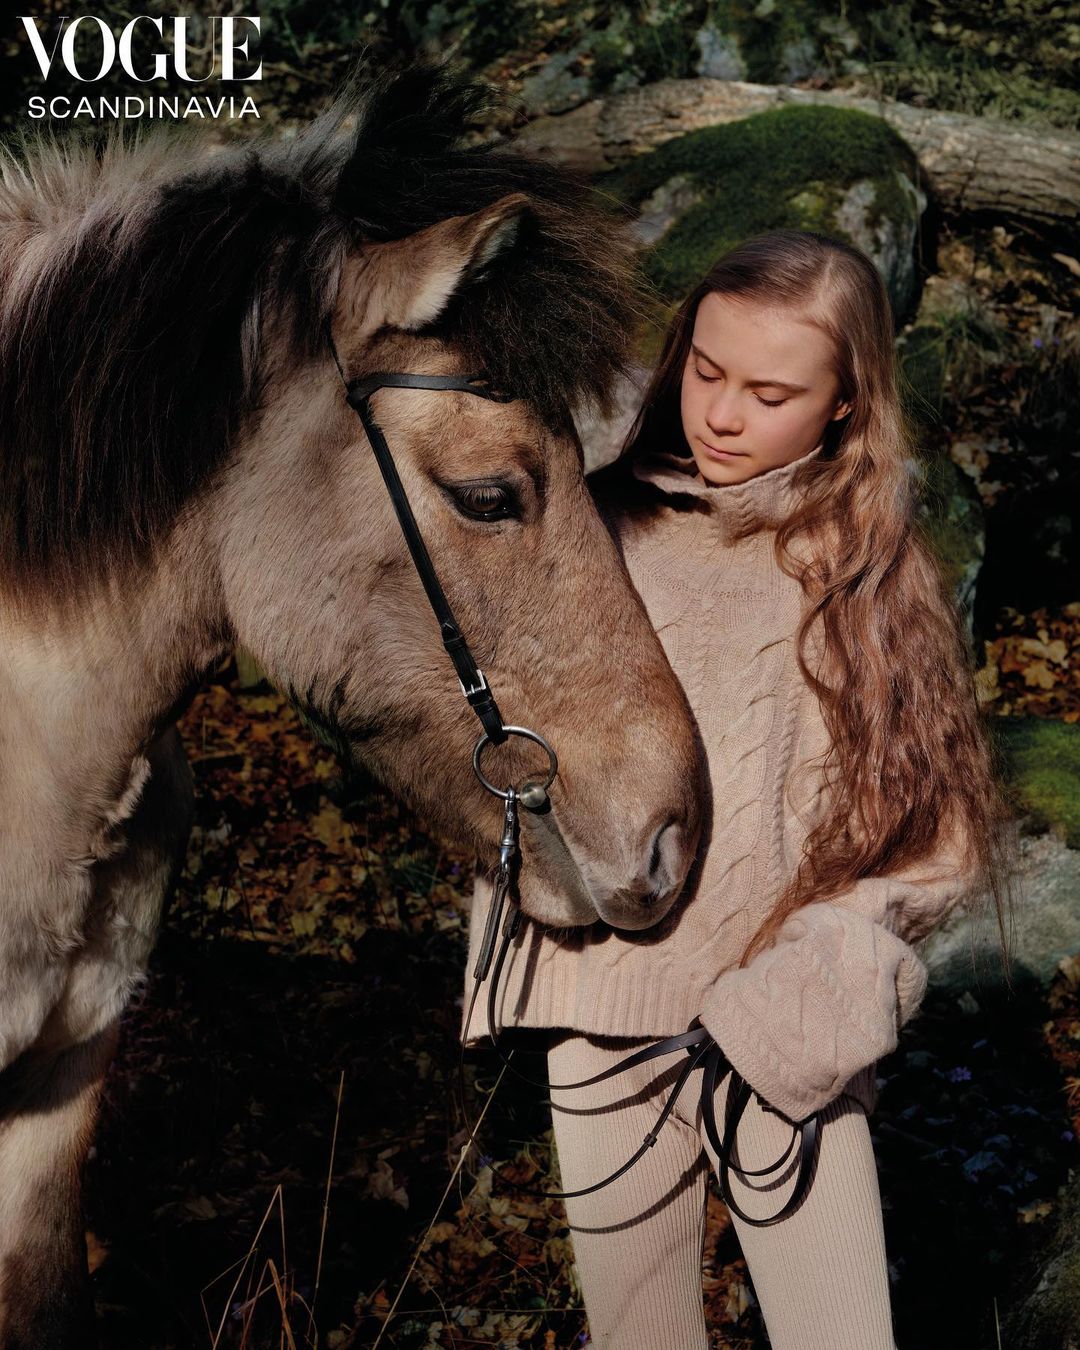 Грета Тунберг появилась на обложке дебютного номера Vogue Scandinavia